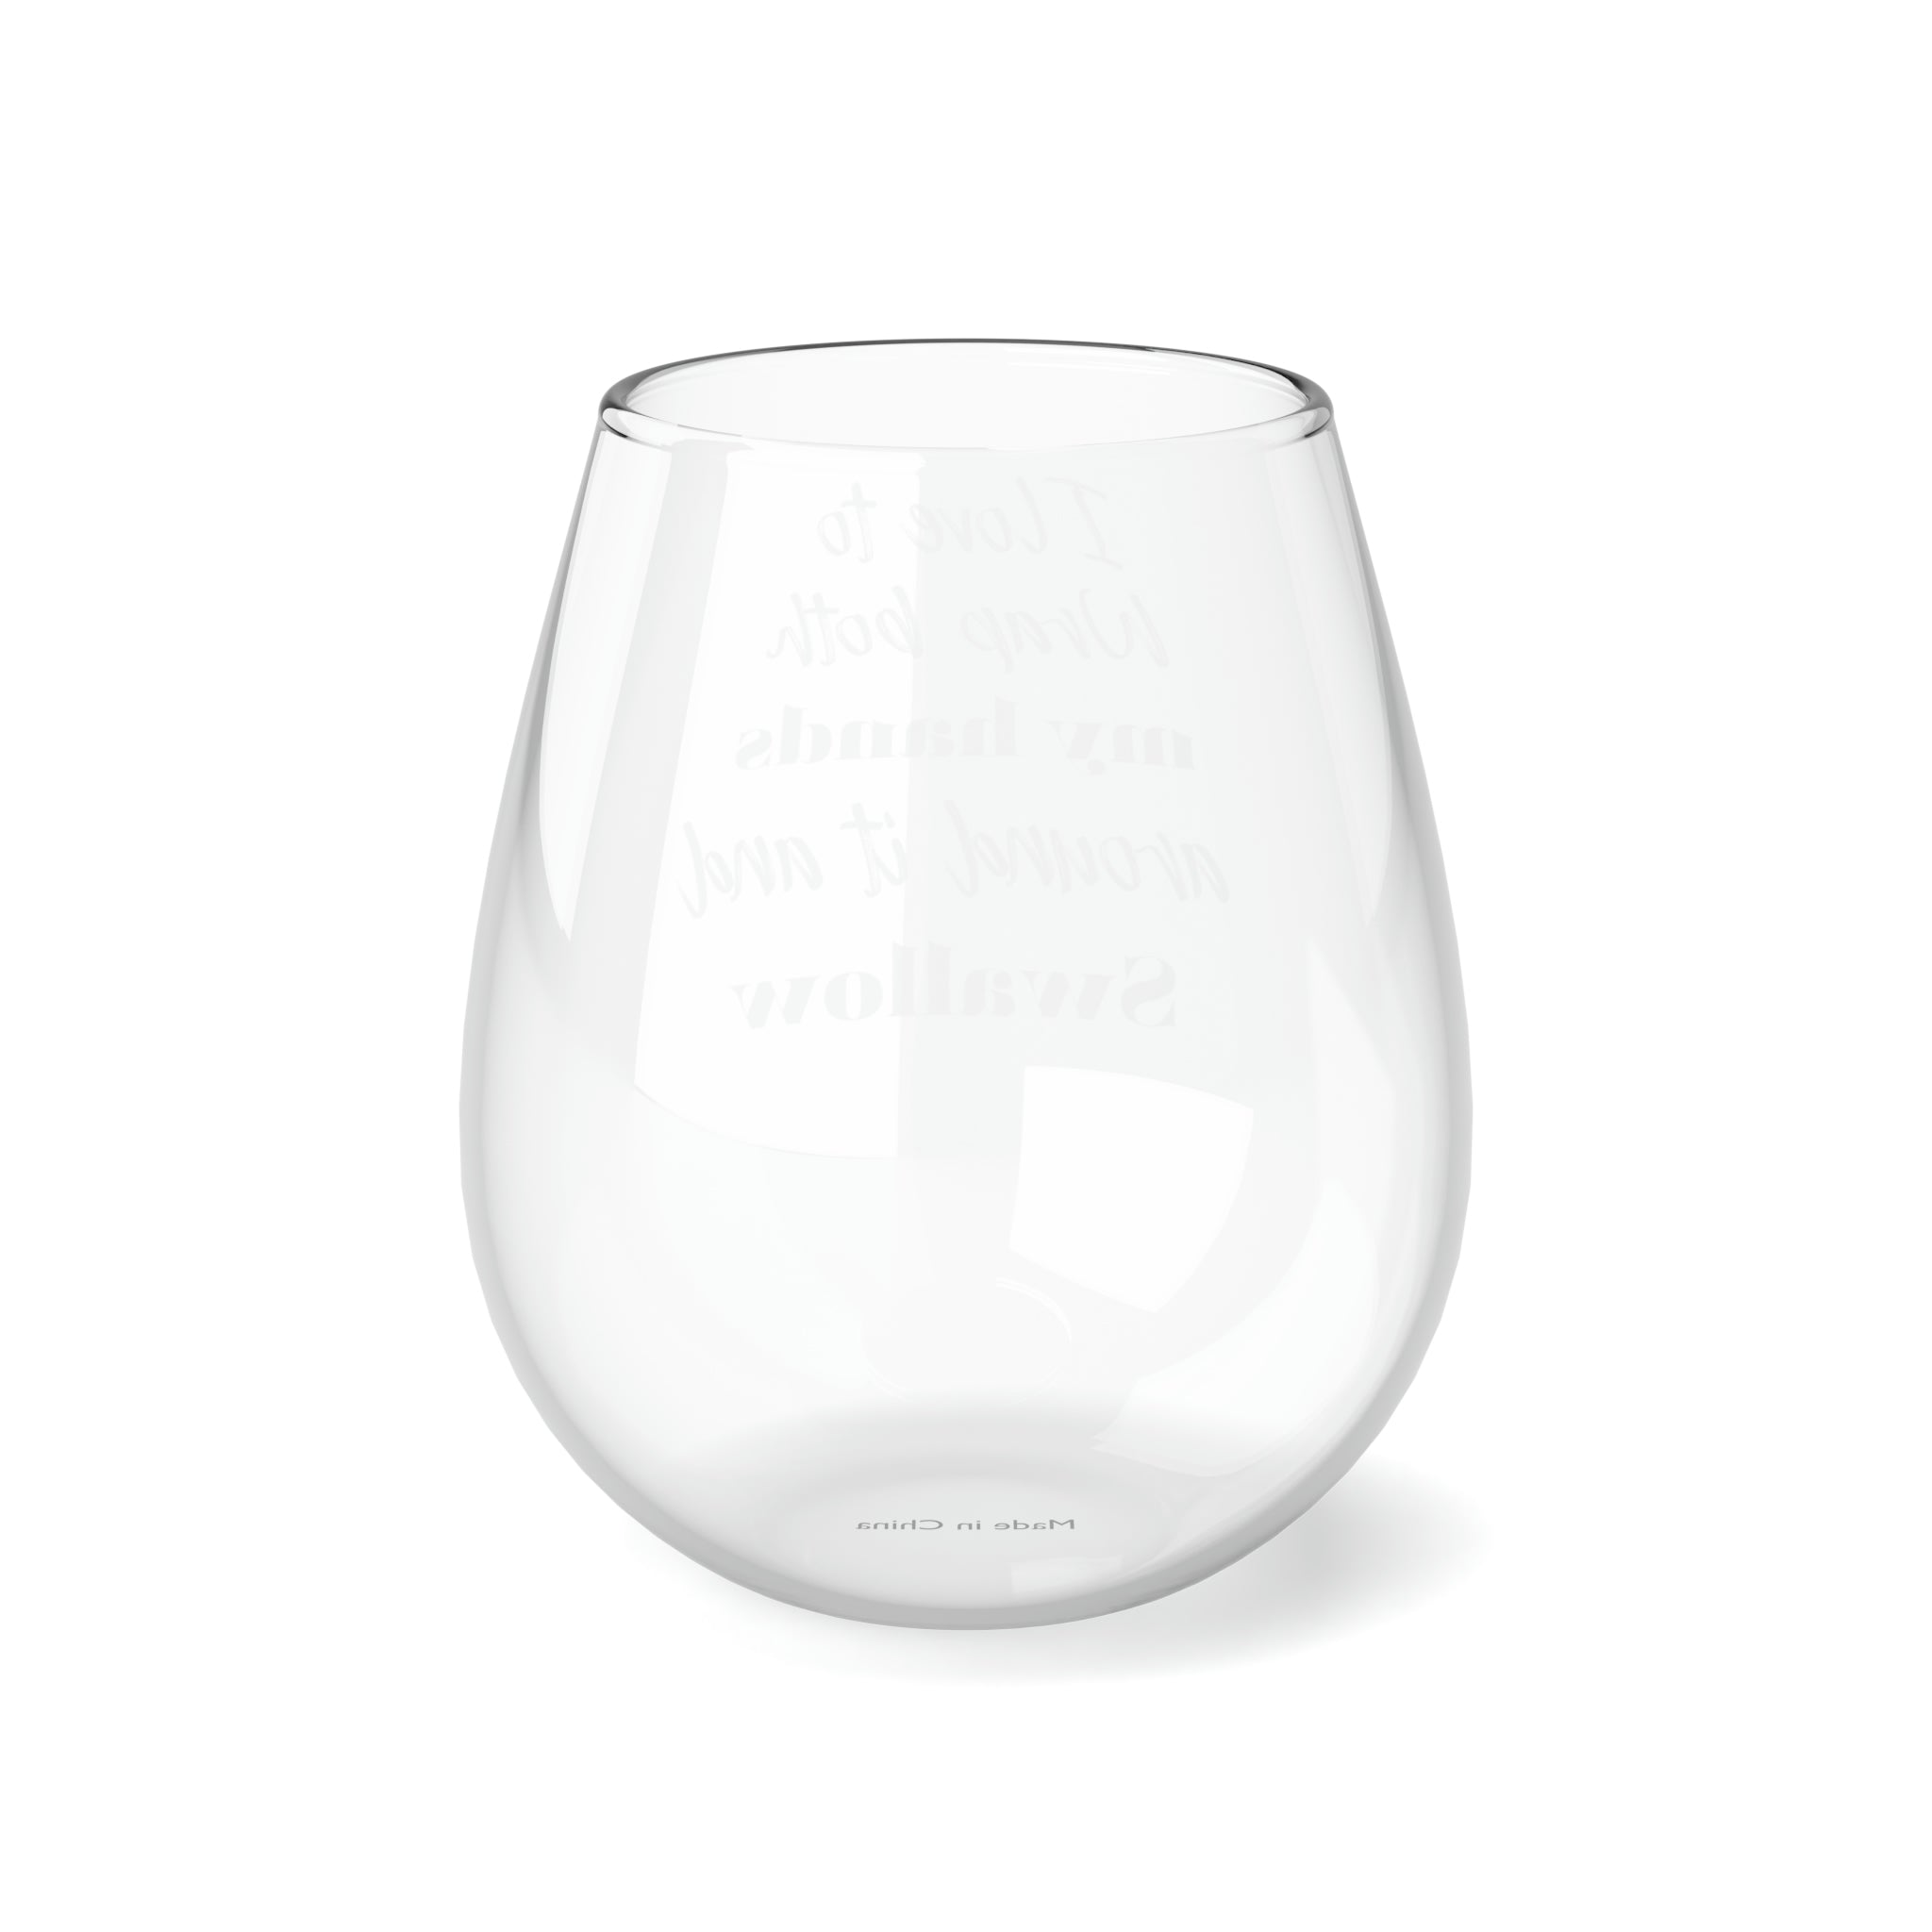 Stemless Wine Glass, 11.75oz - Wrap My Hands